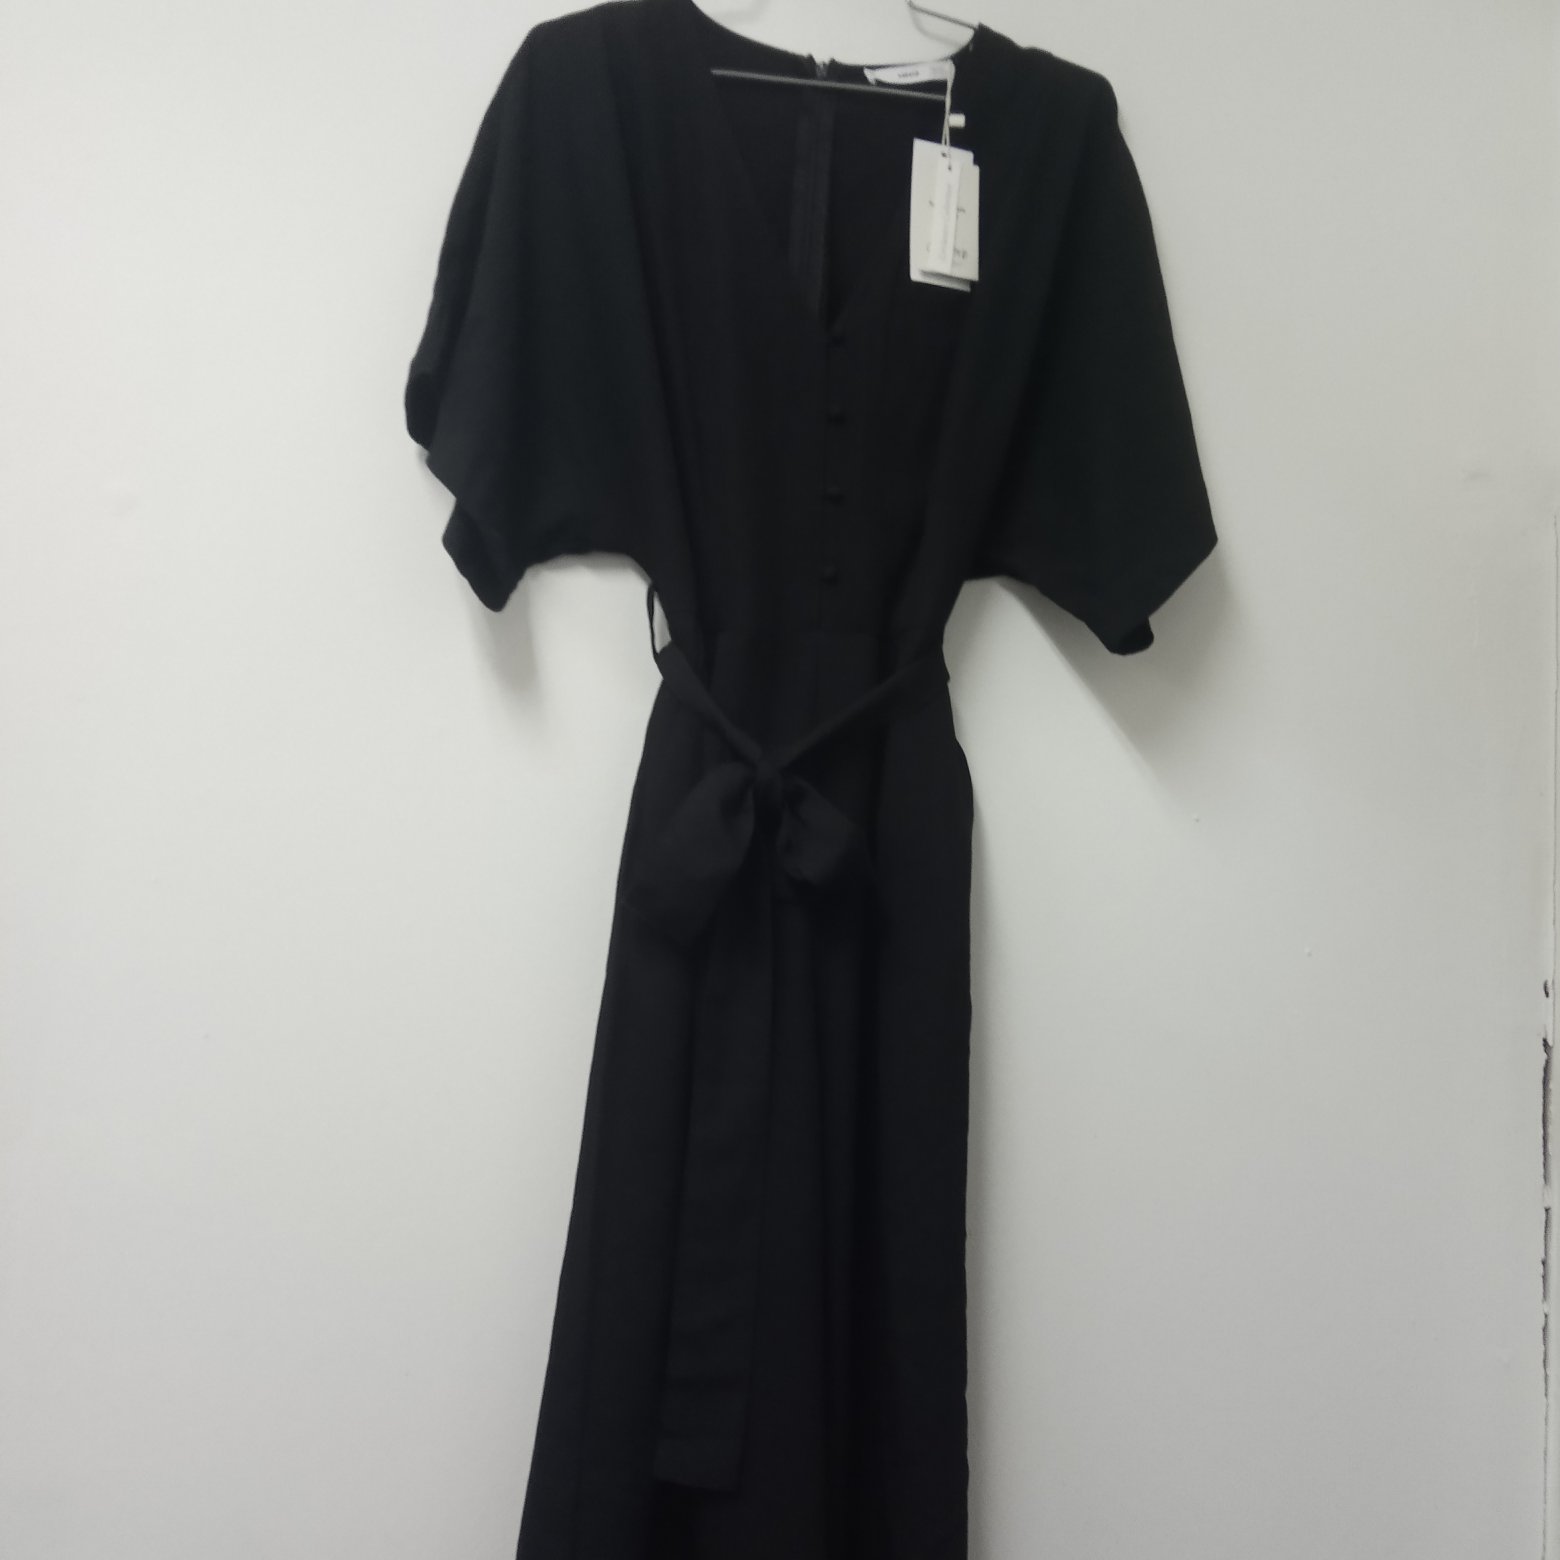 תמונה 1 ,אוברול מנגו שחור חדש סמול למכירה בתל אביב ביגוד ואביזרים  שמלות וחליפות